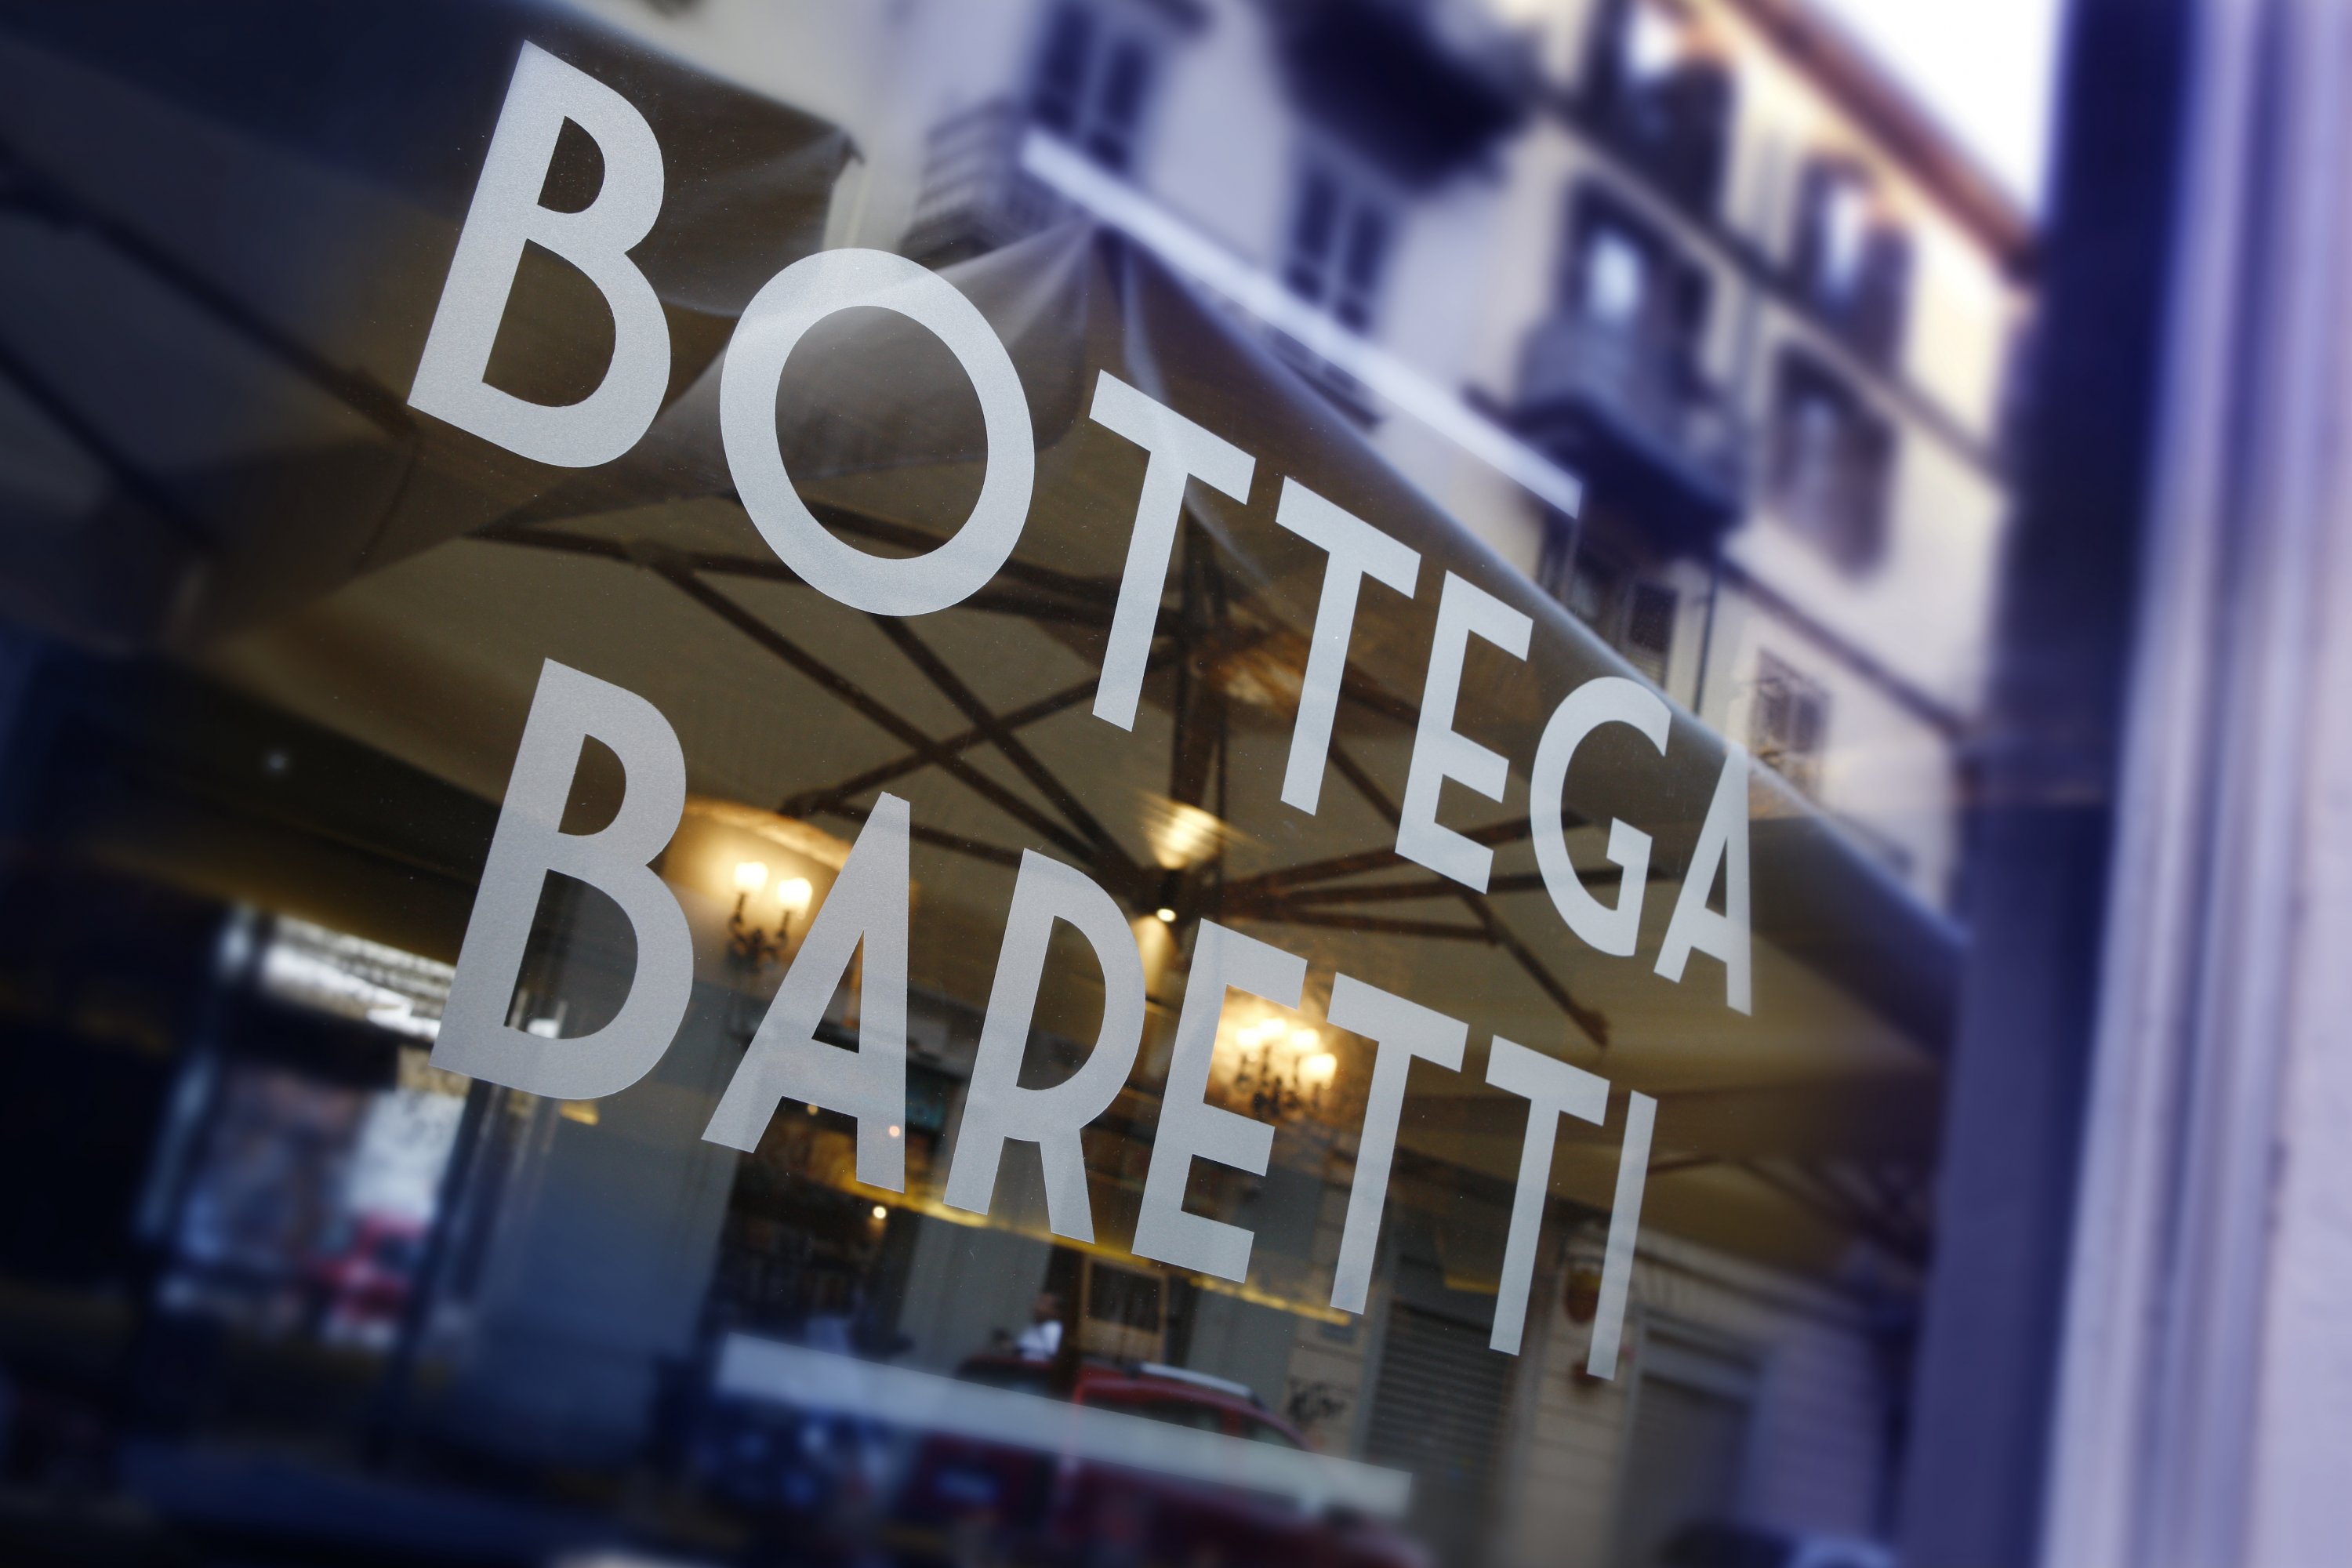 Interior_Bottega_Baretti_Torino_05.jpg